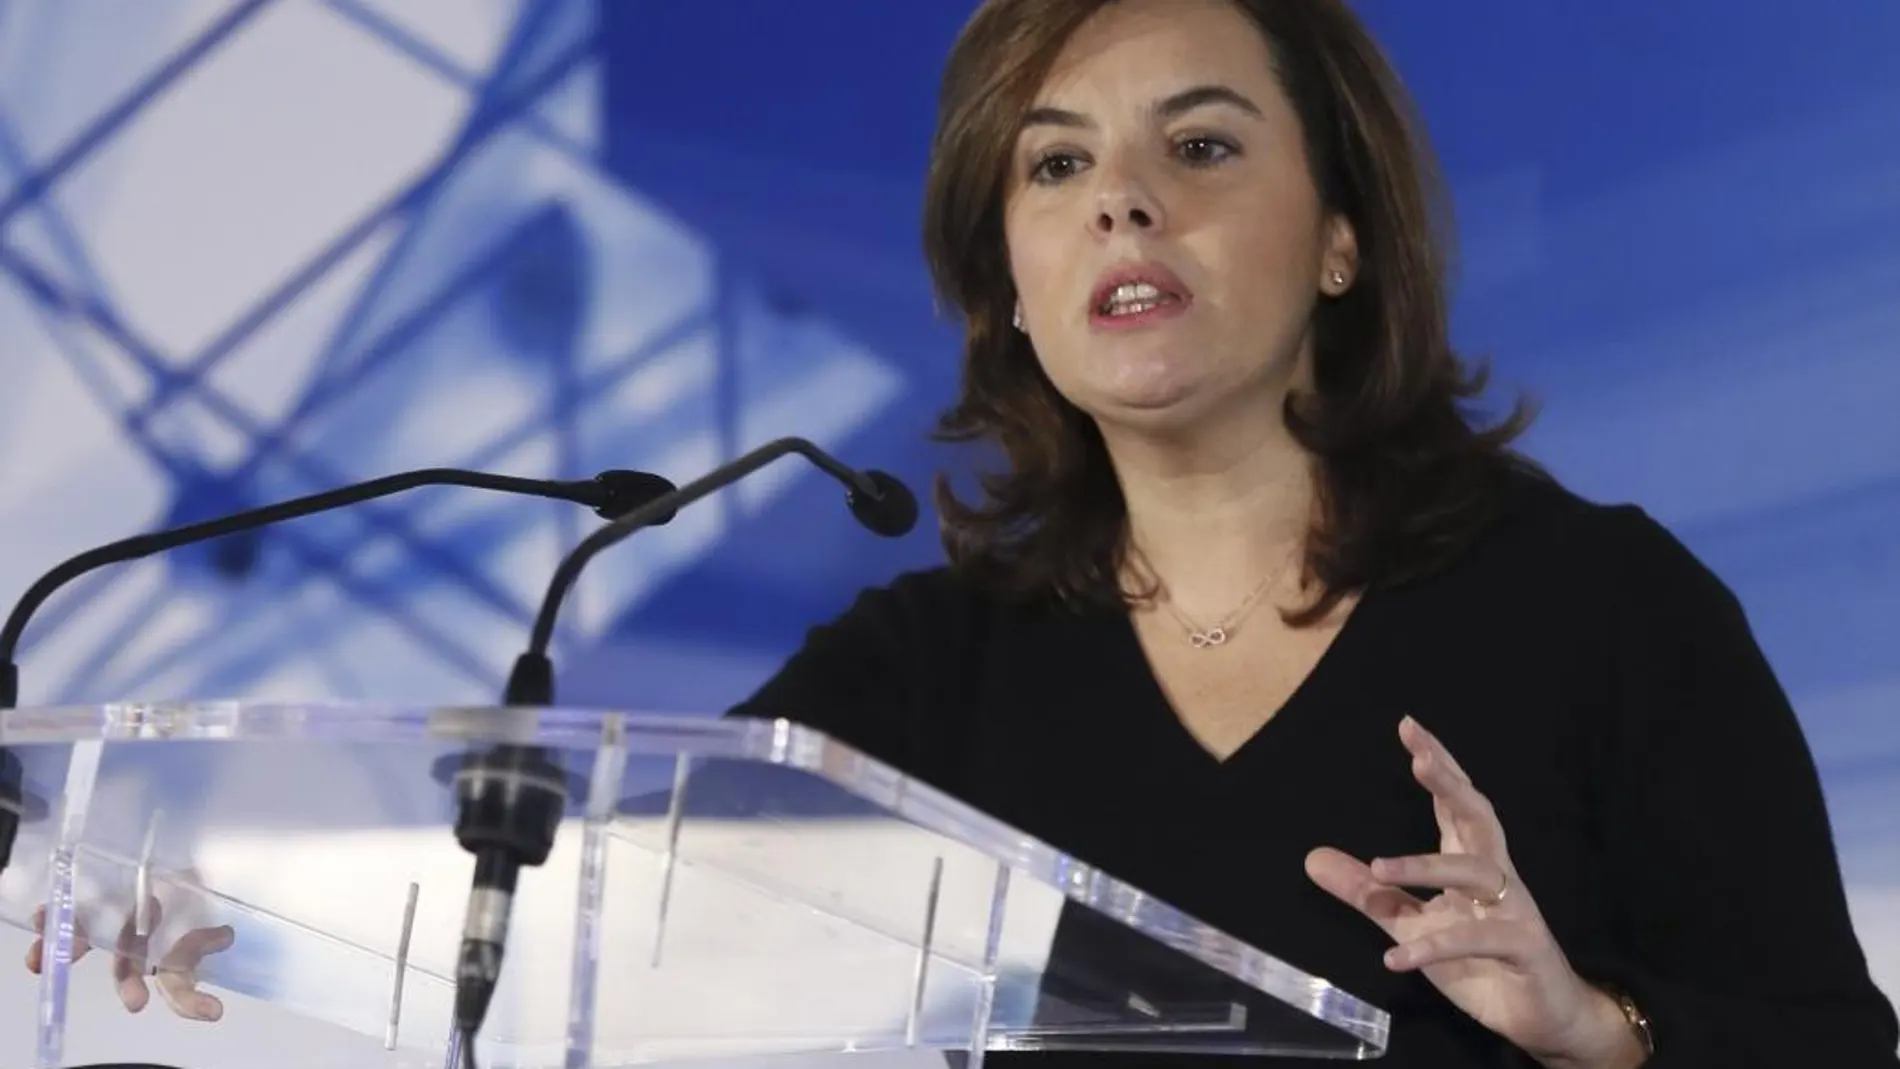 La vicepresidenta del Gobierno, Soraya Sáenz de Santamaría, durante su intervención en el foro "Perspectivas económicas para España 2016"